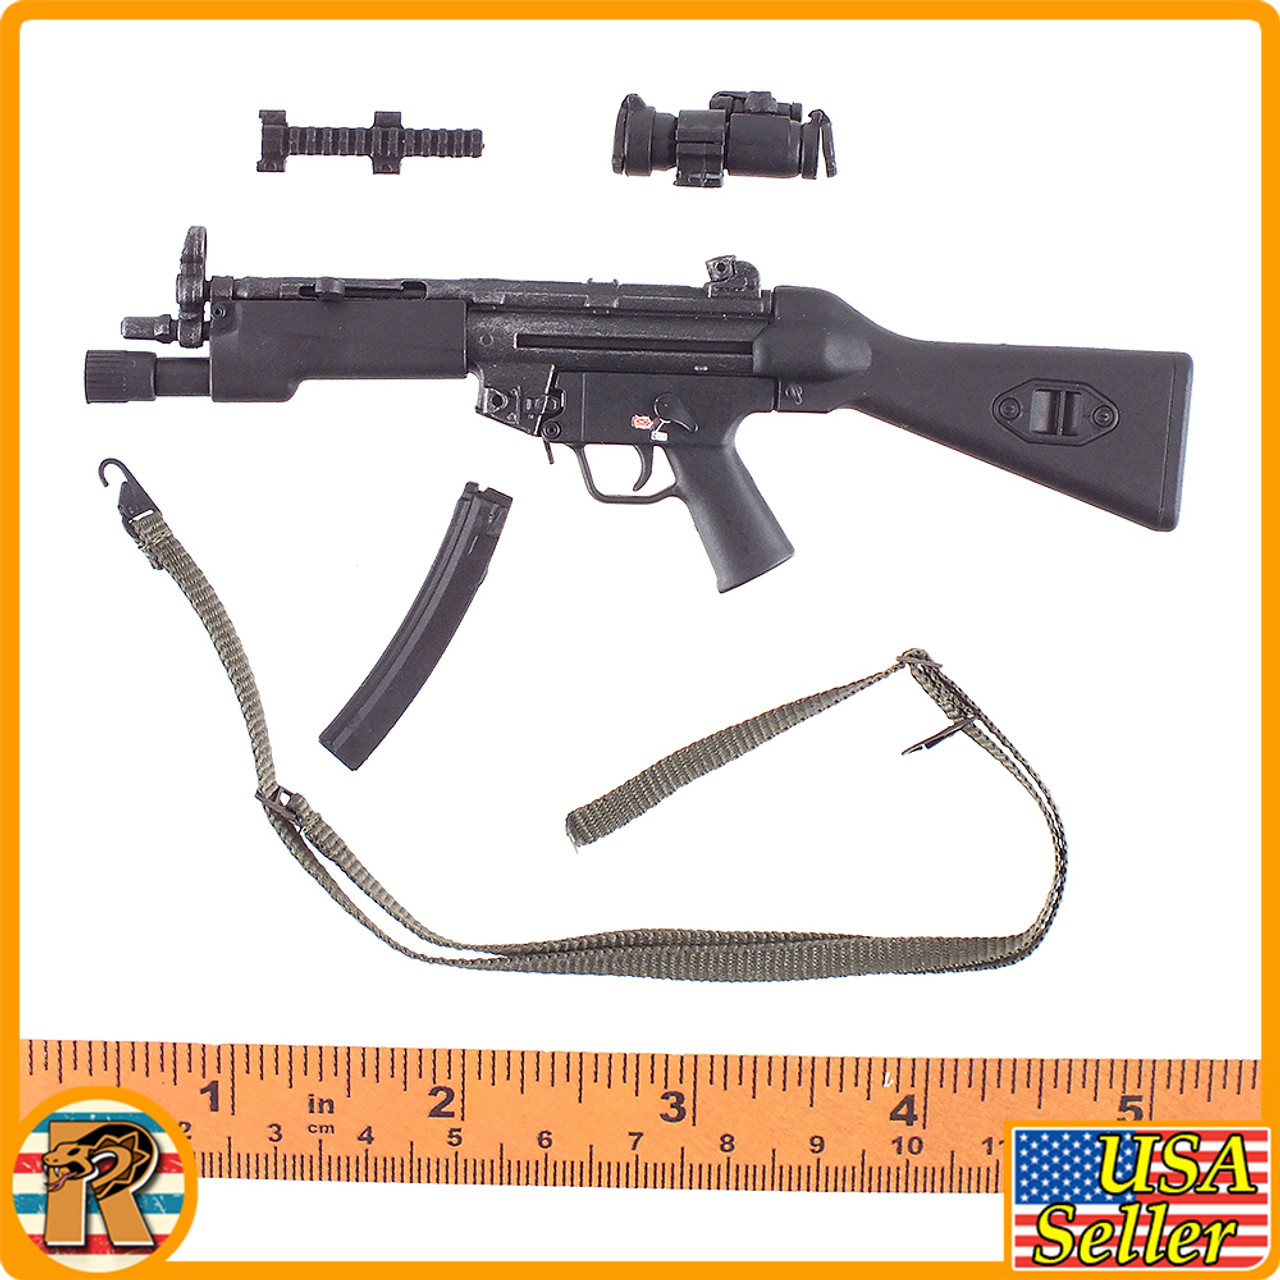 Katie Metro Police - MP5 Submachine Gun - 1/6 Scale -